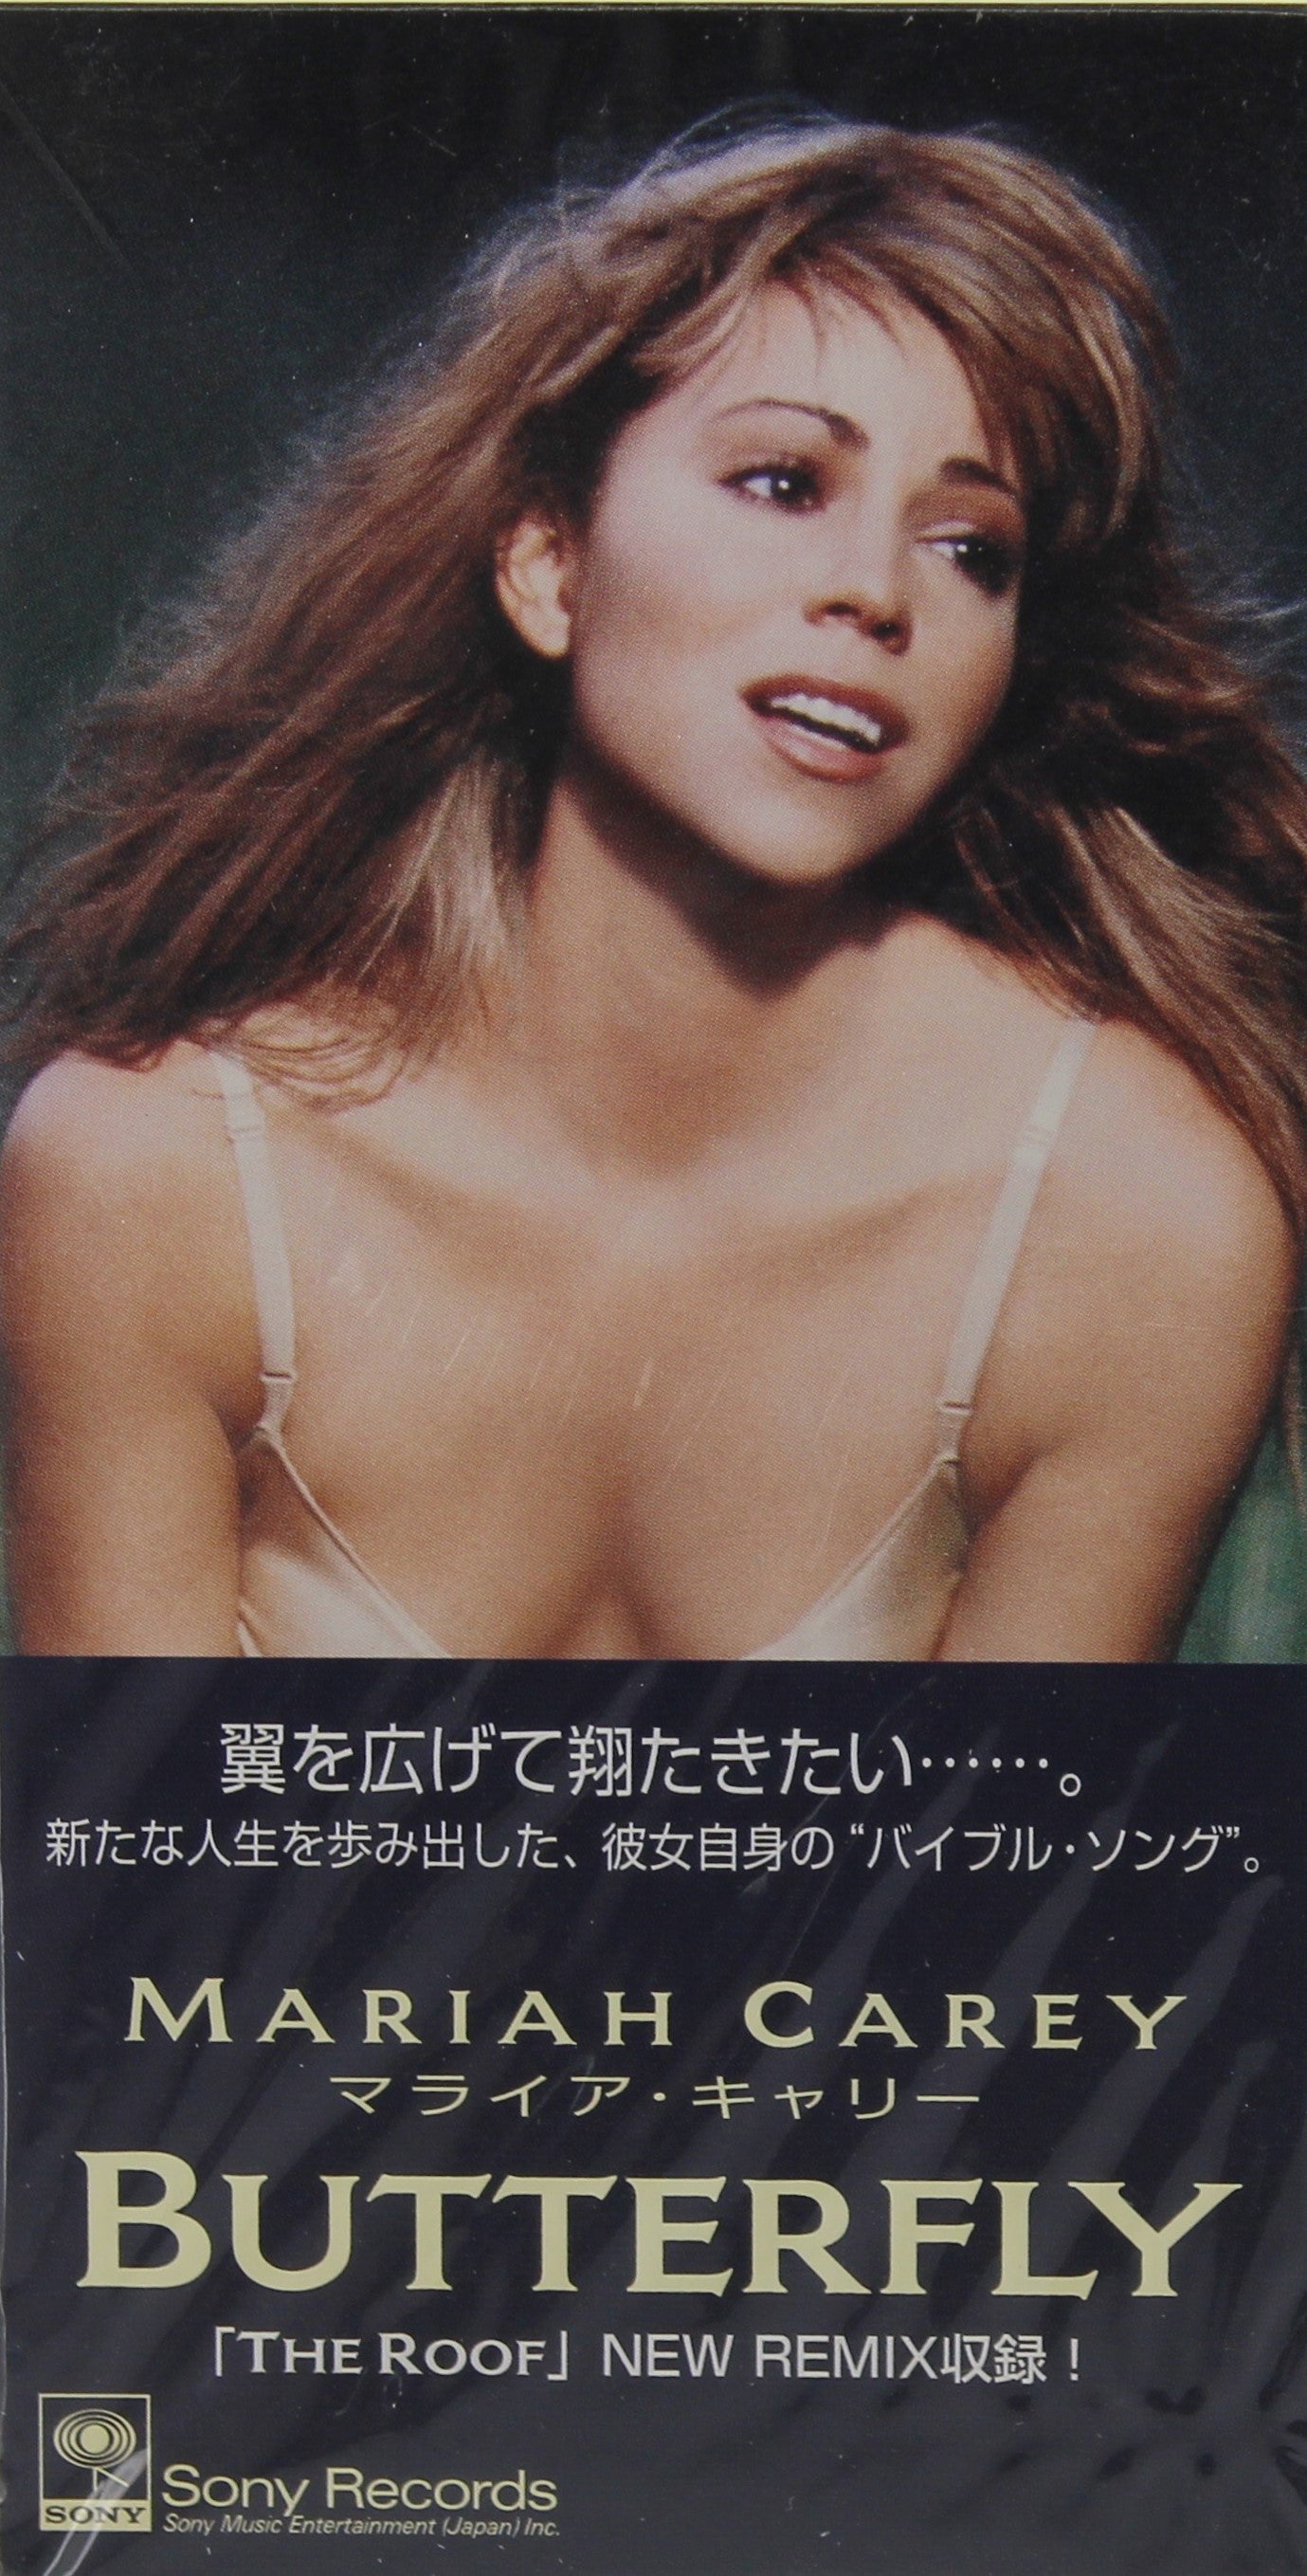 Mariah Carey – Butterfly, CD, Mini, Single, Japan 1997 - preciousvinyl